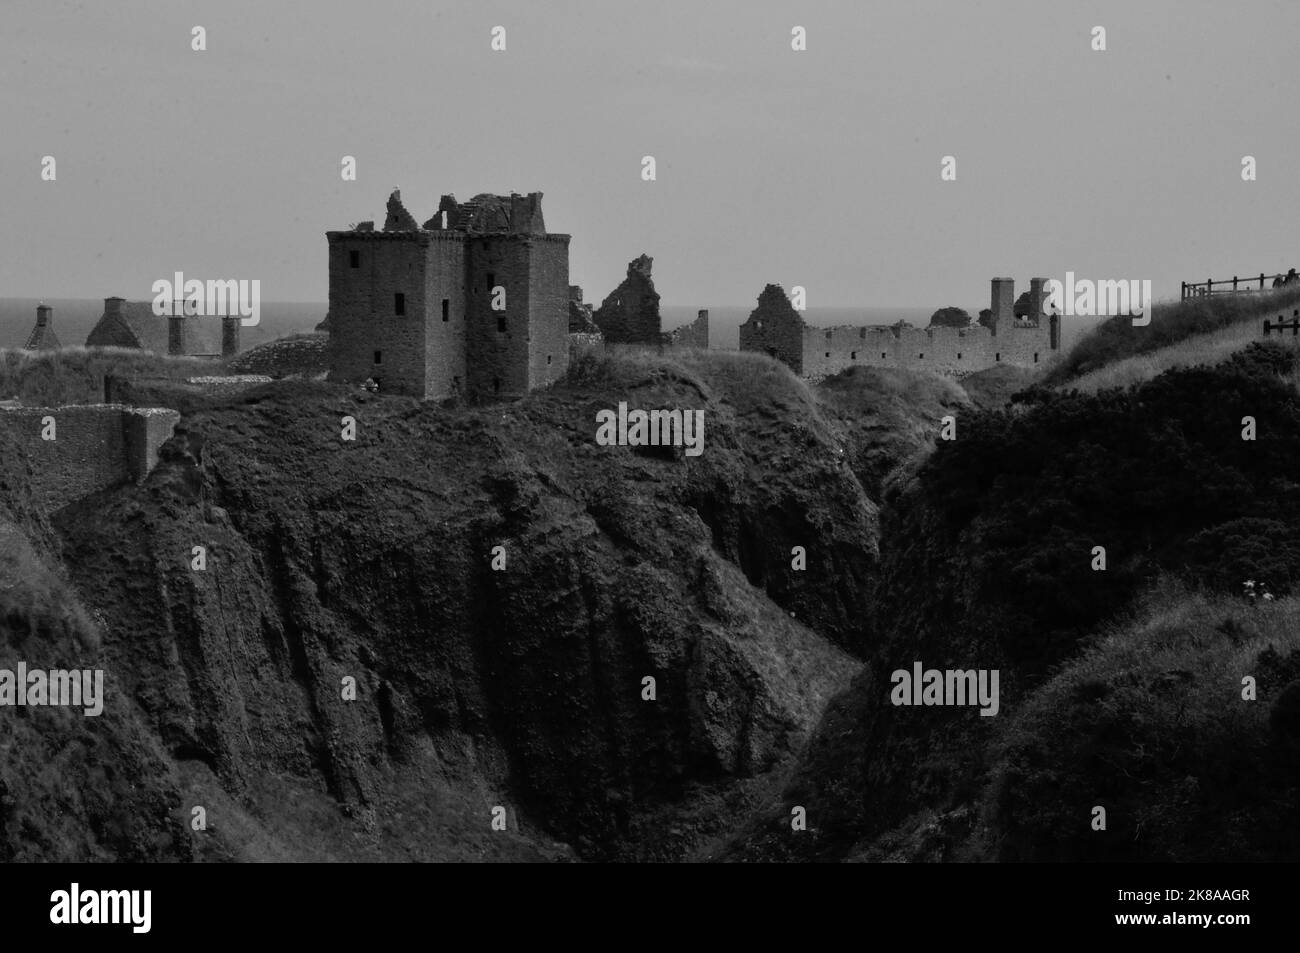 Die Ruine von Dunnottar Castle BEI Stonehaven an der schottischen Ostküste liegt nicht nur malerisch direkt am Meer auf schroffen Felsen. Sie ist auch Banque D'Images